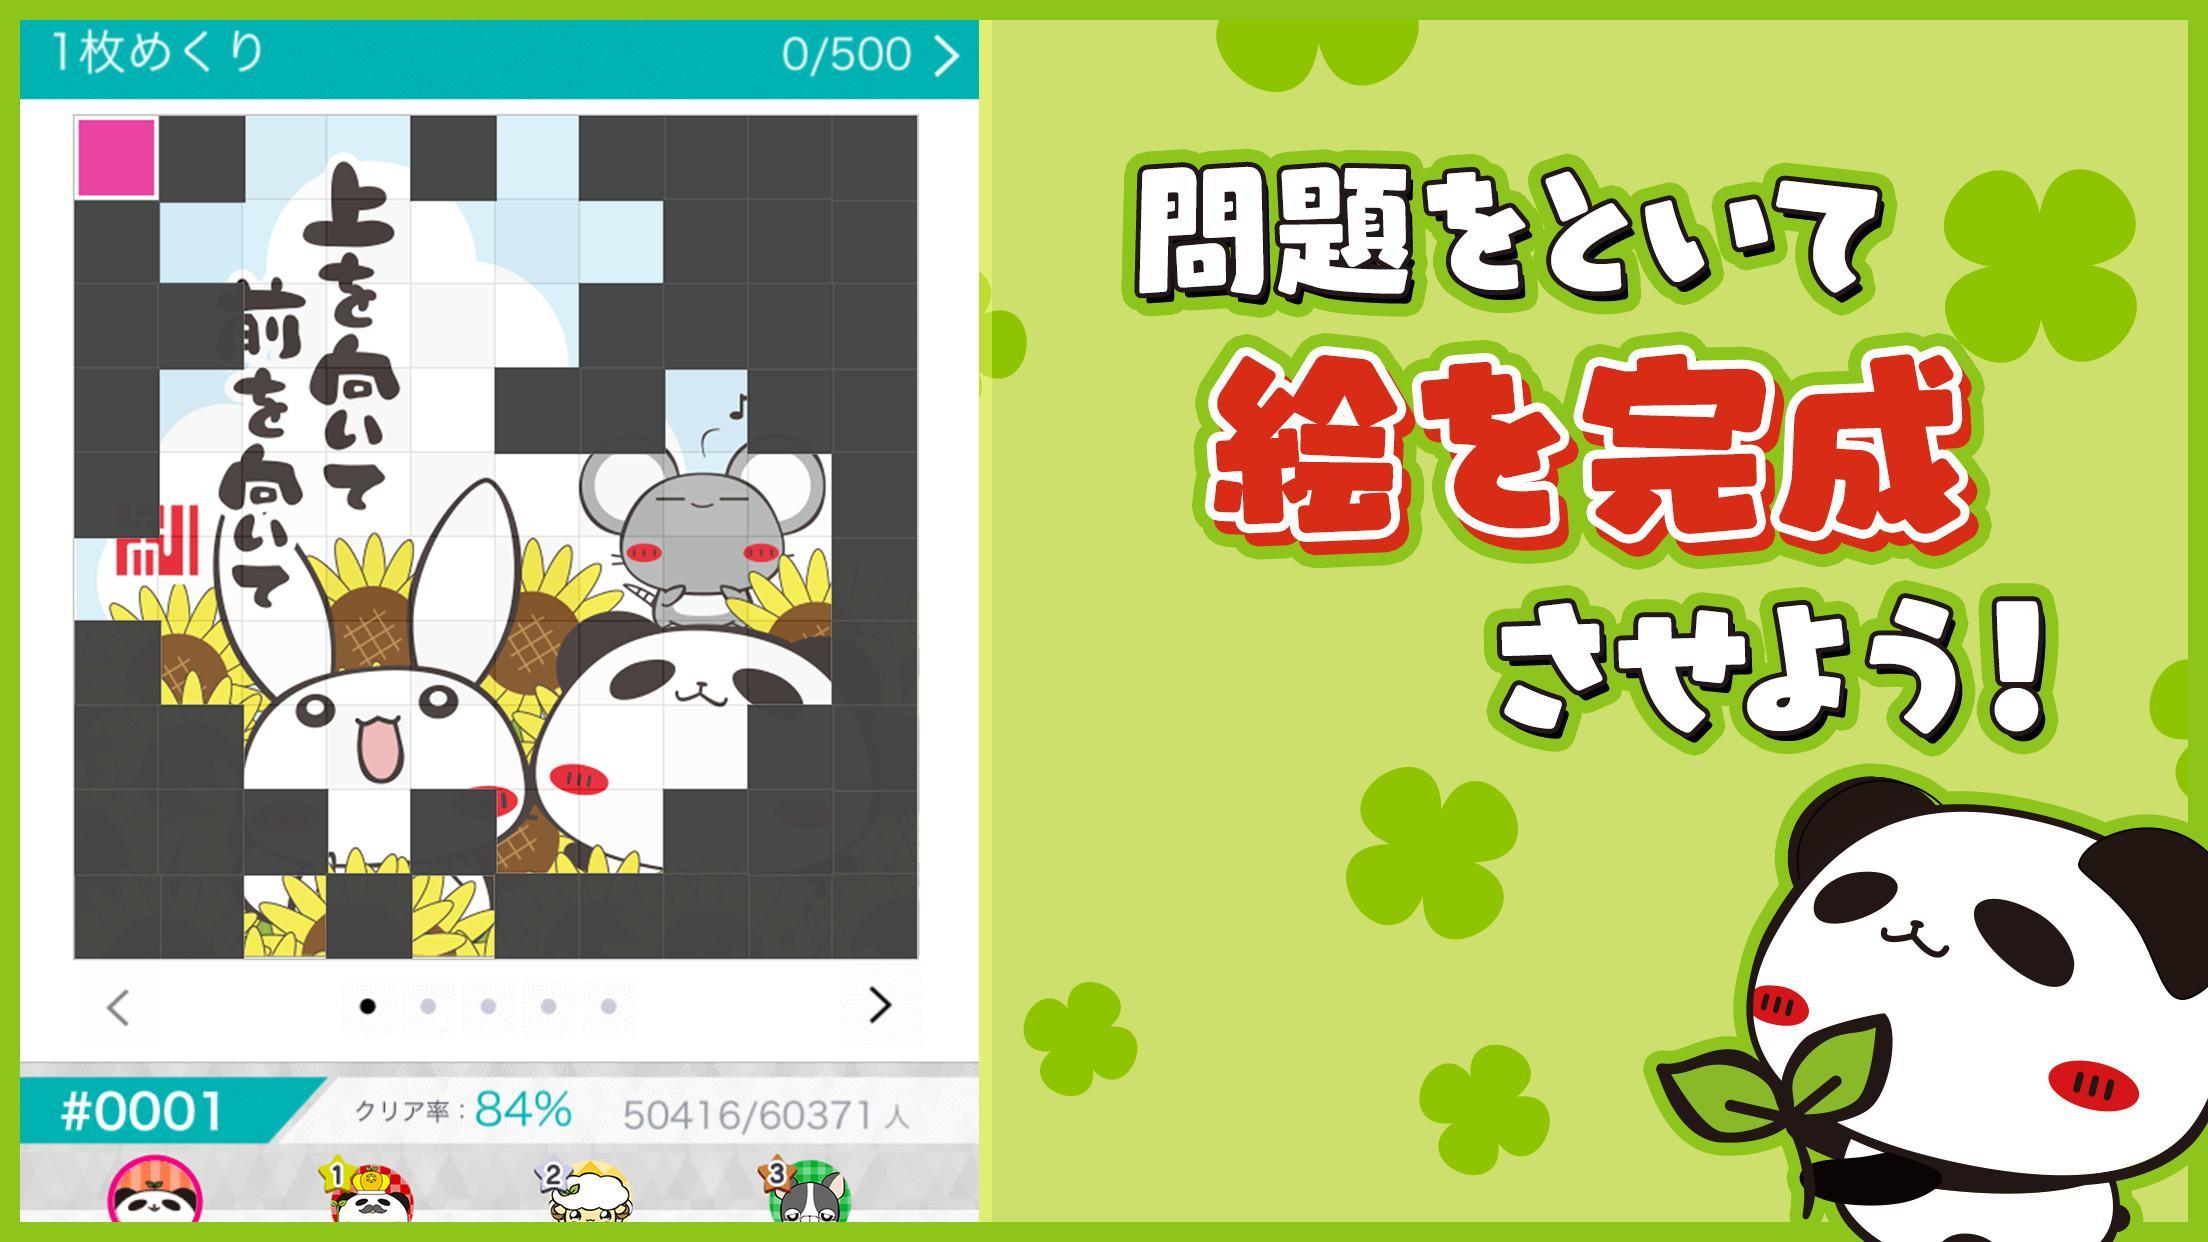 パンダのたぷたぷ ソリティア【公式アプリ】無料トランプゲームのキャプチャ